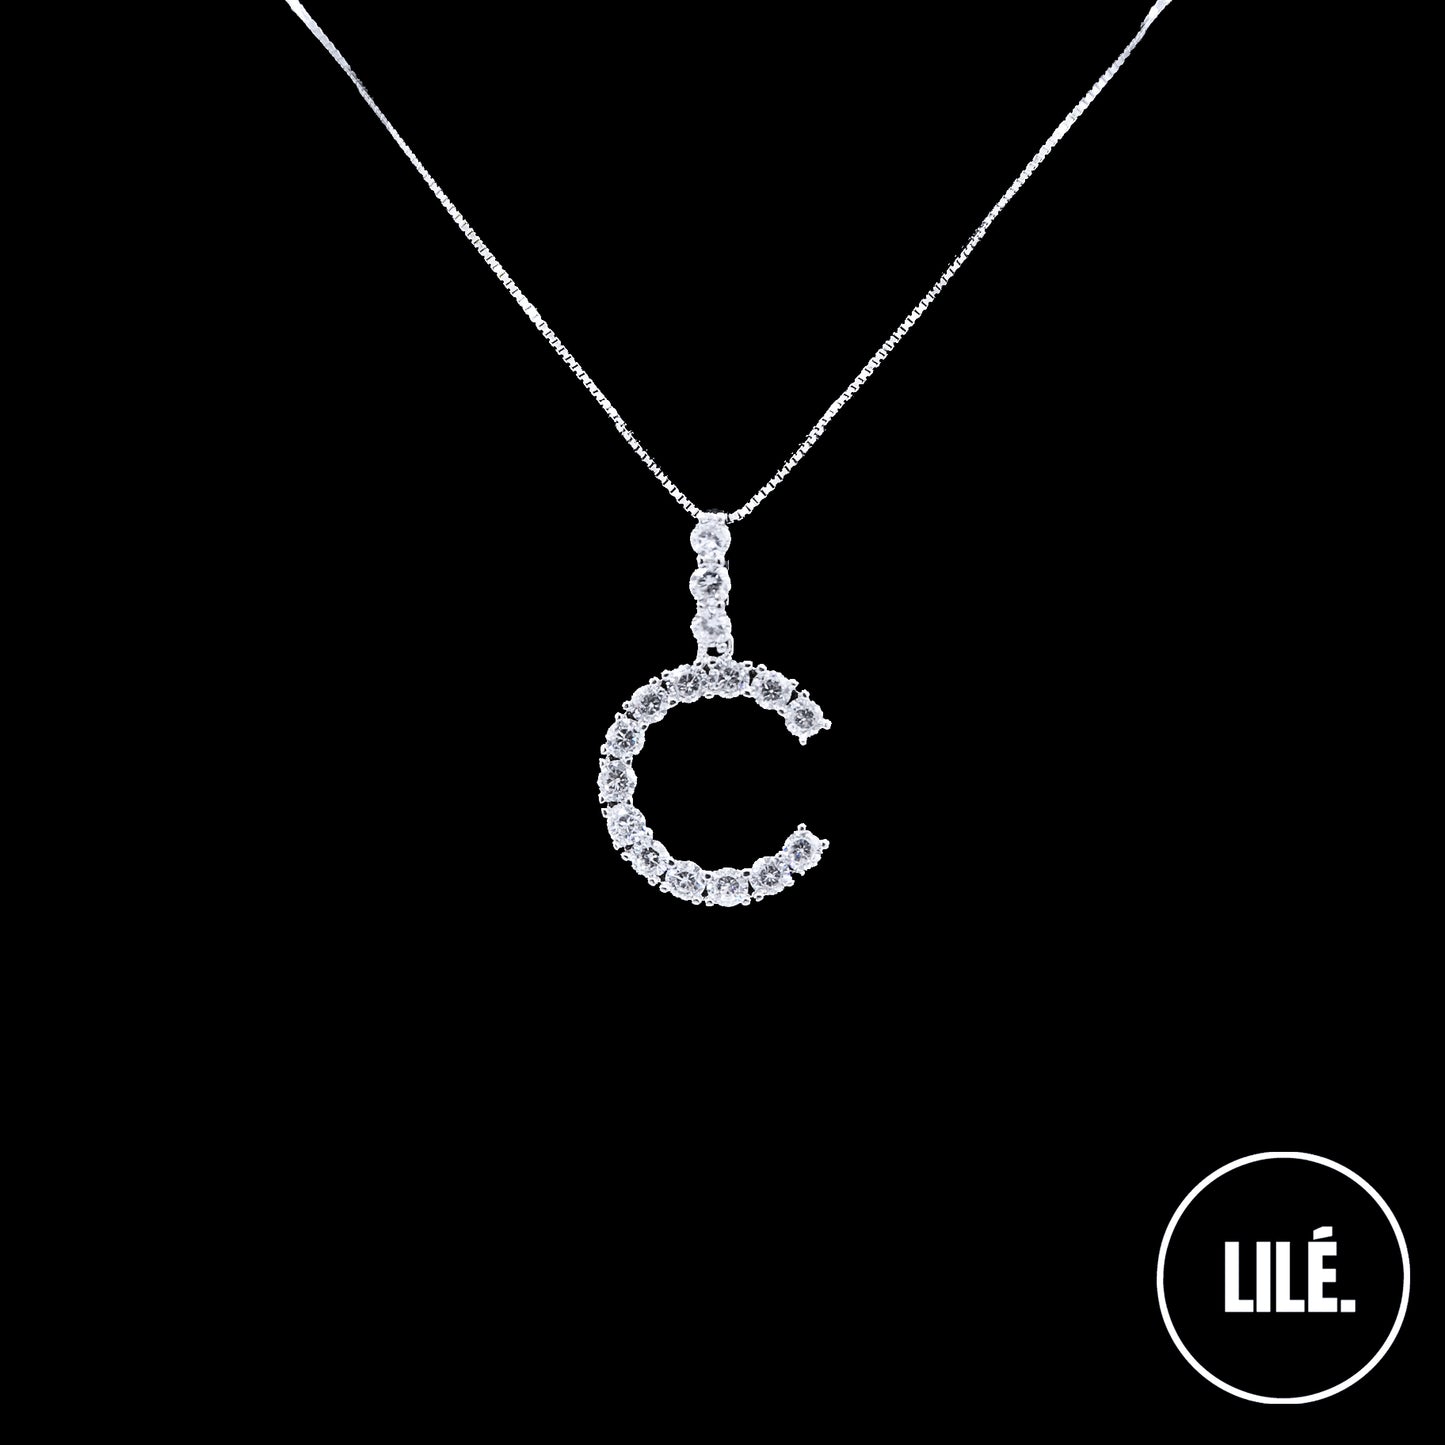 LETTER CHAIN - LILÈ - Necklace - LILÈ - online jewellery store - jewelry online - affordable jewellery online Australia